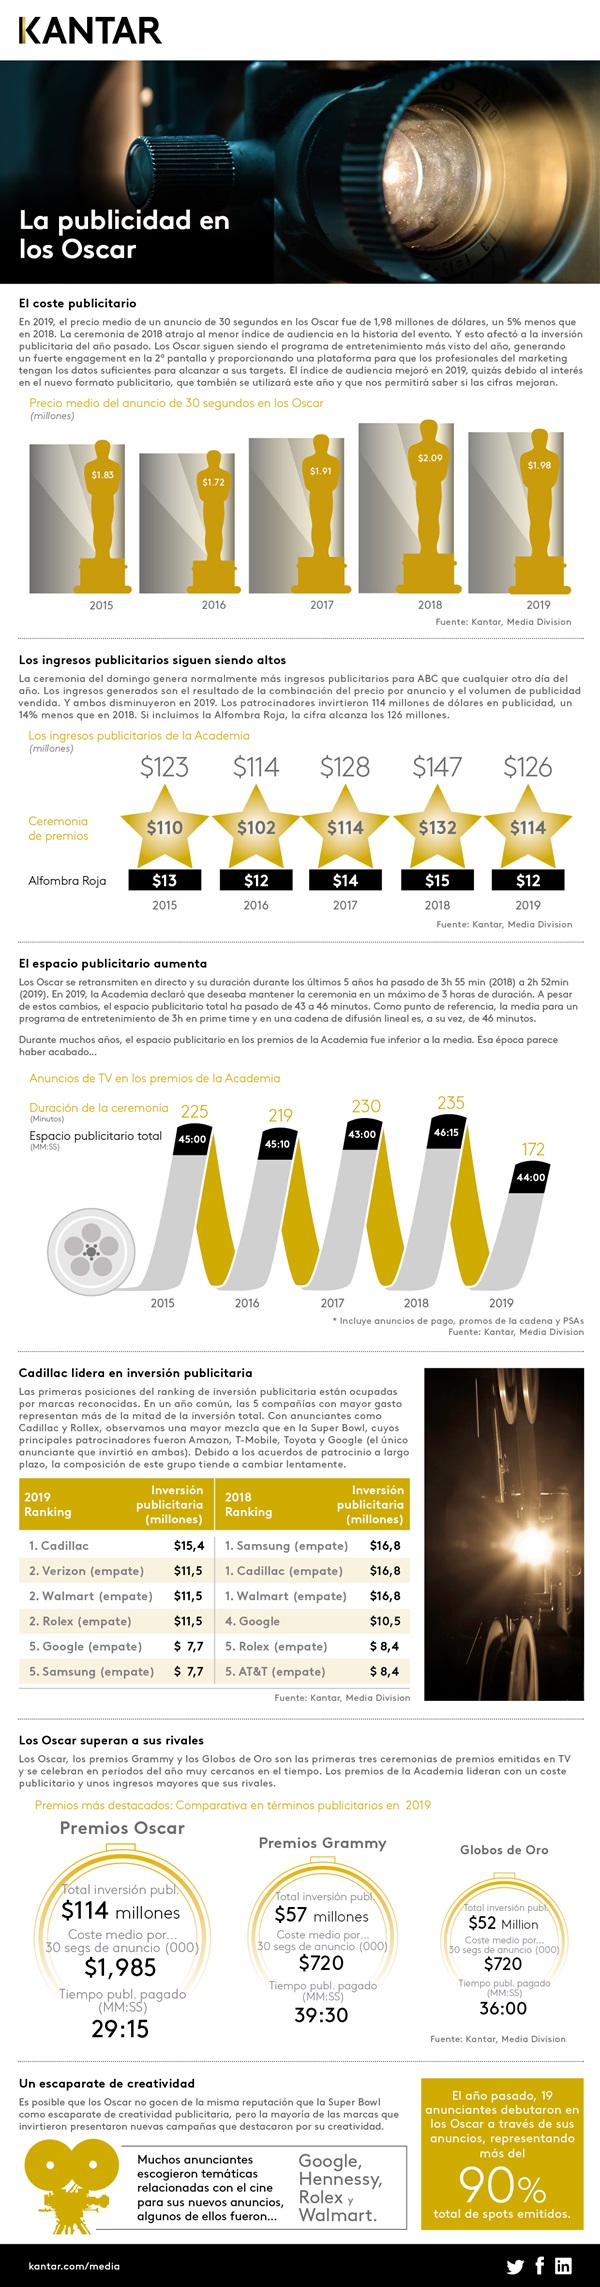 infografía publicidad Oscar 2020